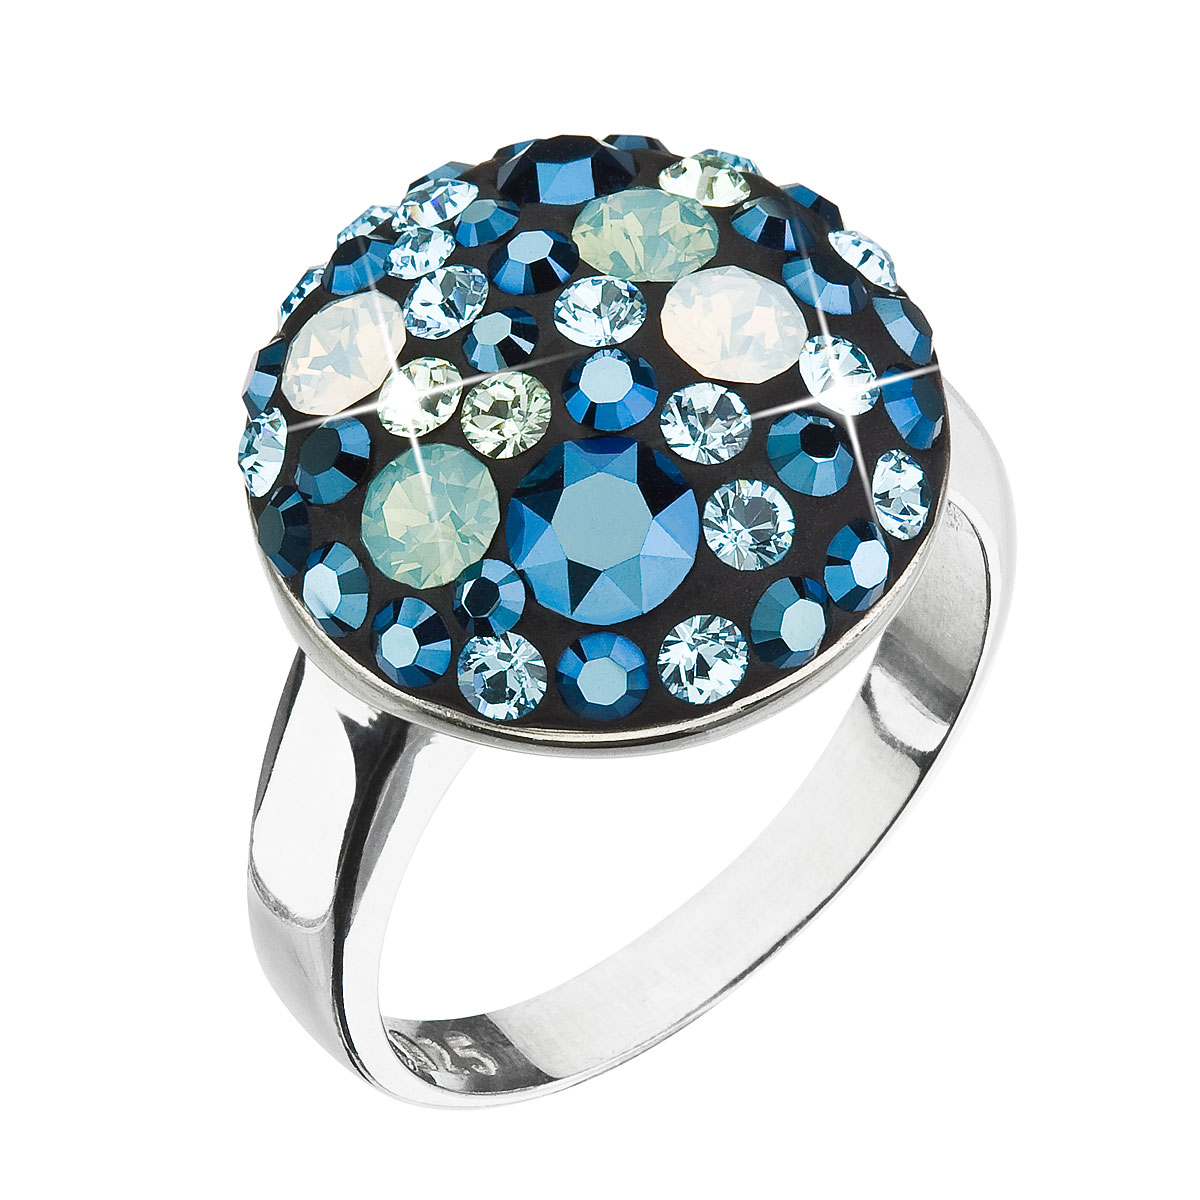 Evolution Group Stříbrný prsten s krystaly Swarovski modrý 35034.4